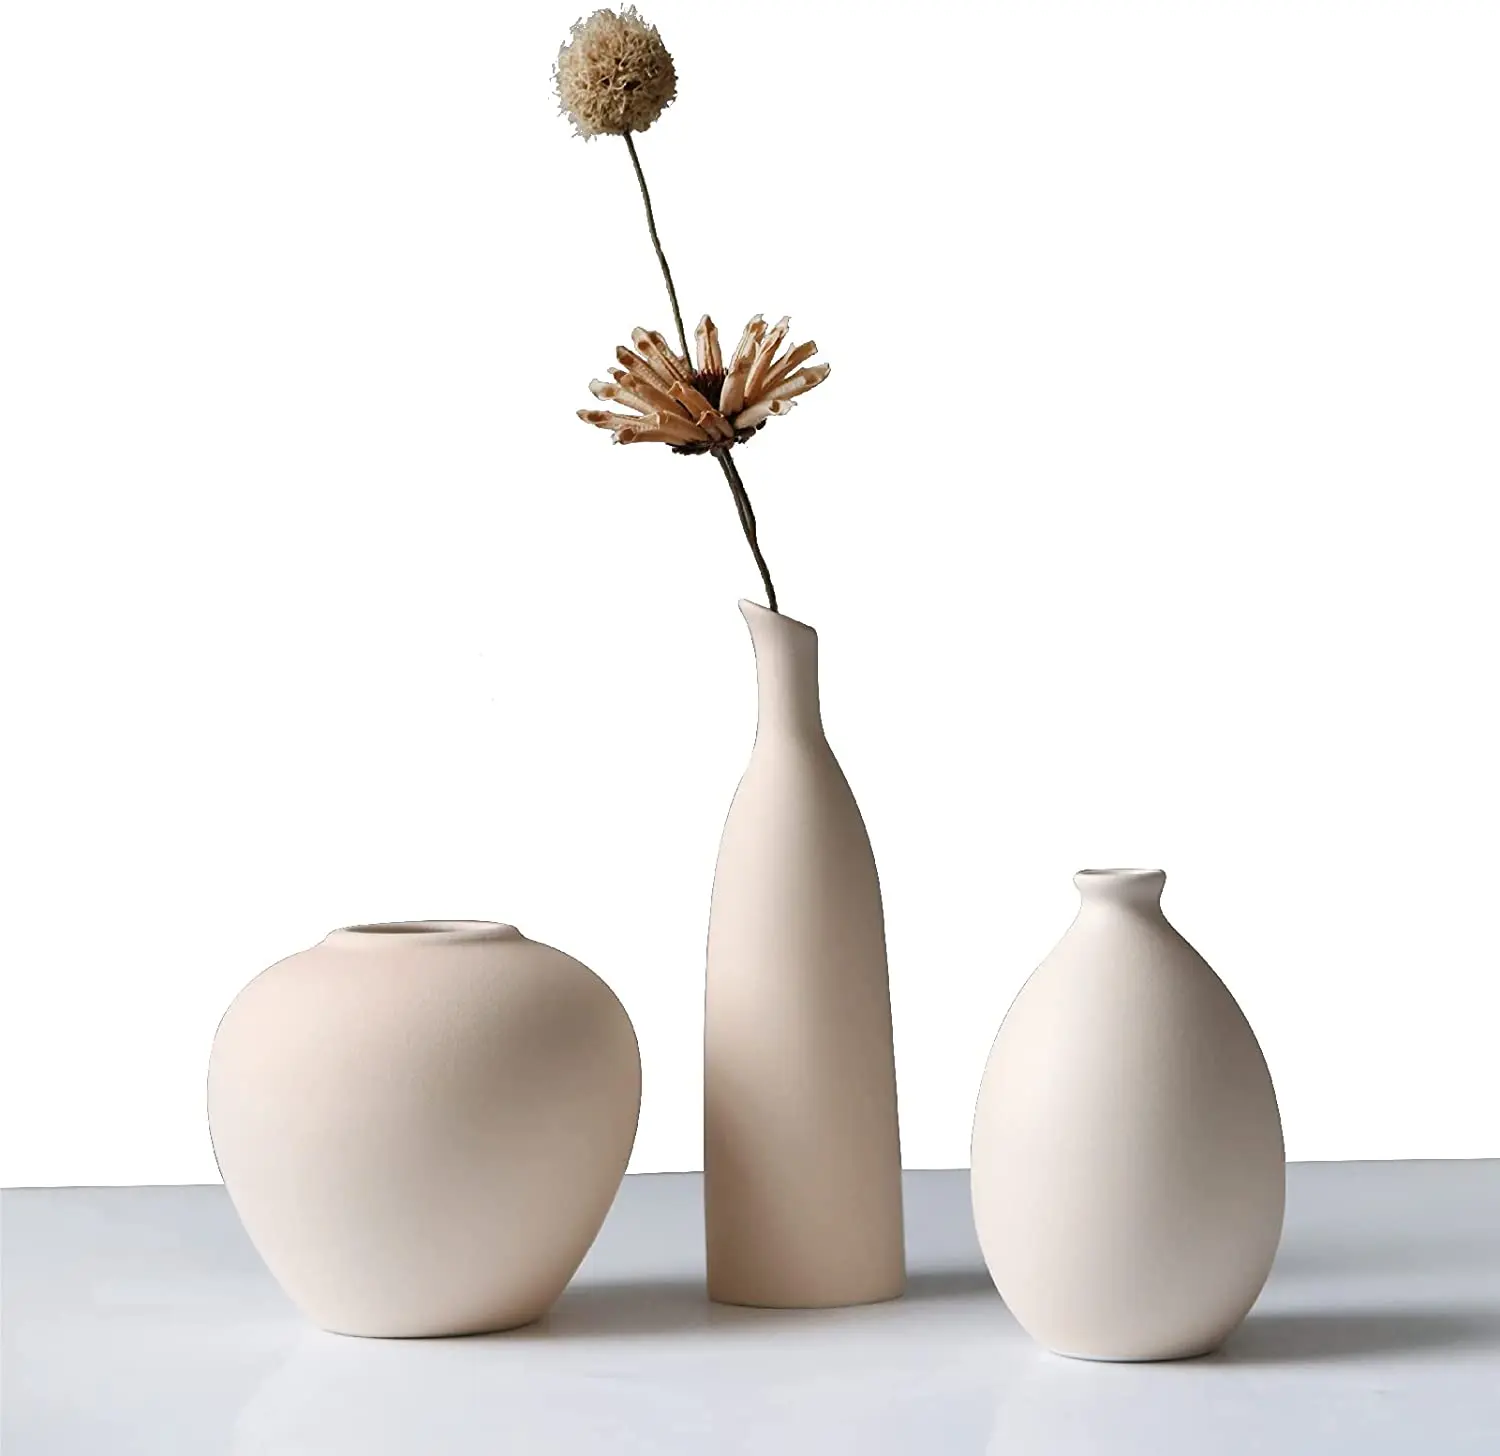 

Abbittar Ceramic Vase Set of 3, Small Flower Vases for Rustic Home Decor, Modern Farmhouse Decor, Living Room Decof